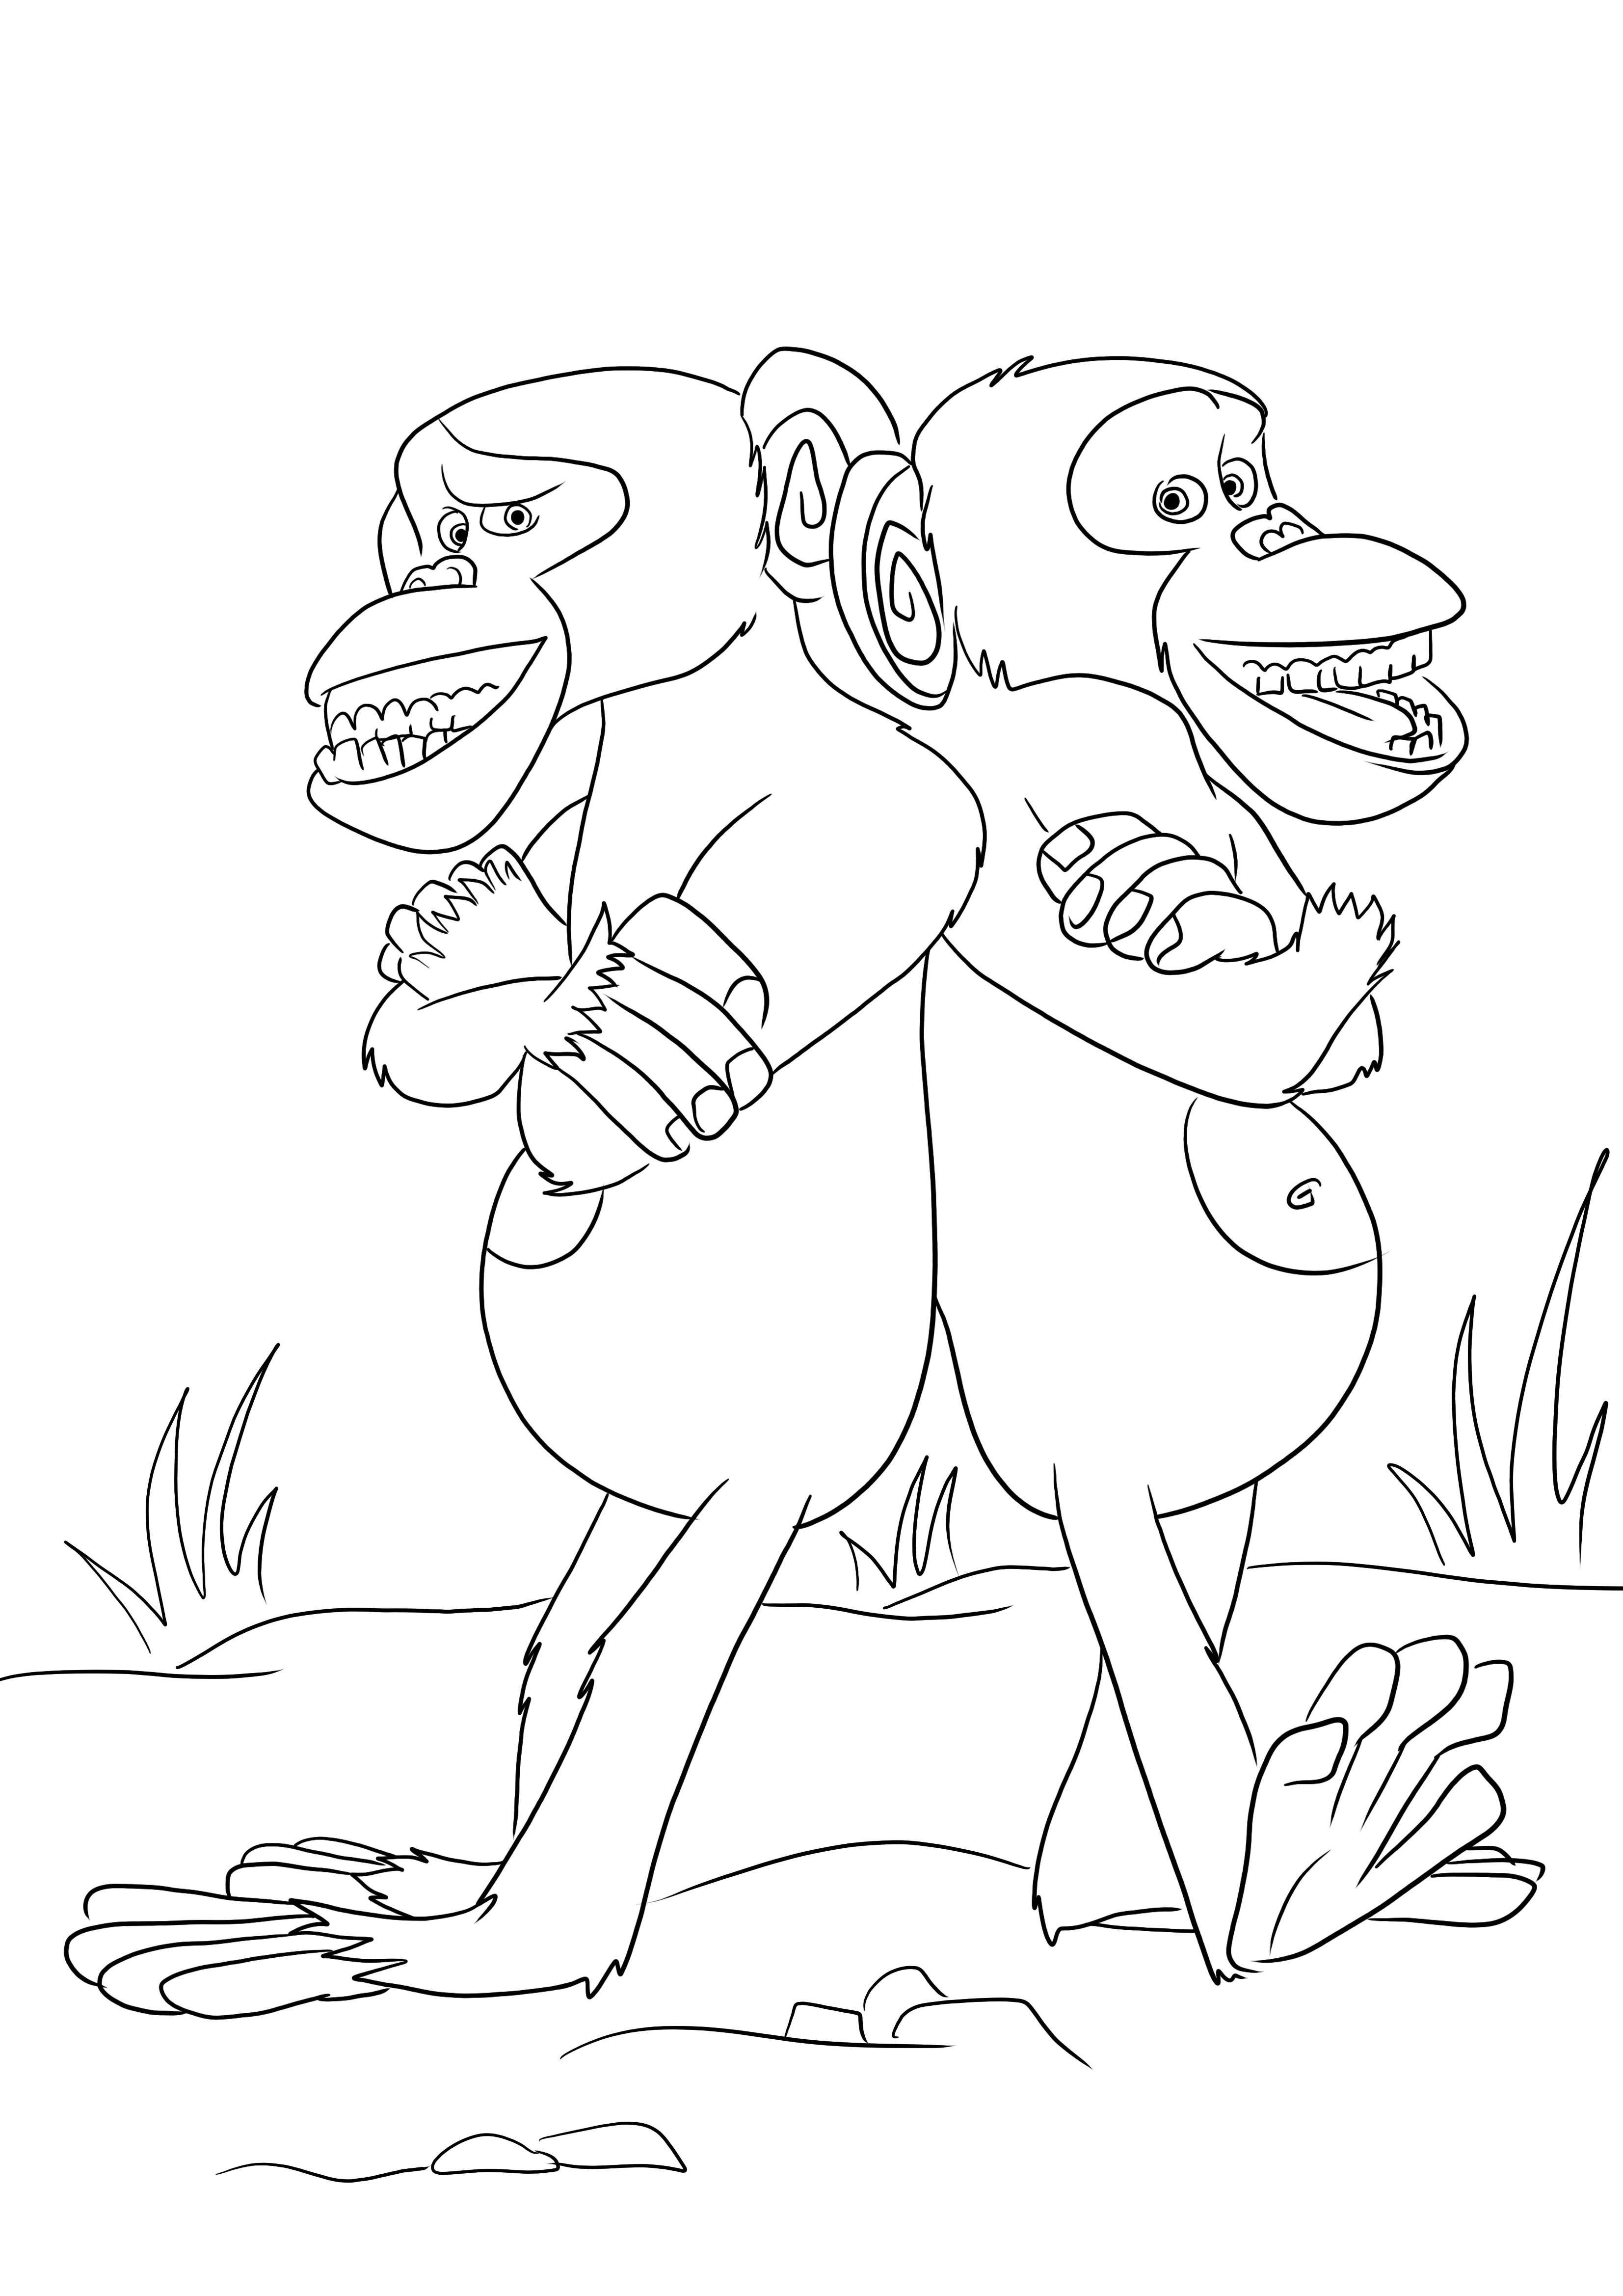 Imaginea de colorat Mason și Phil-cele două maimuțe amuzante poate fi descărcată gratuit